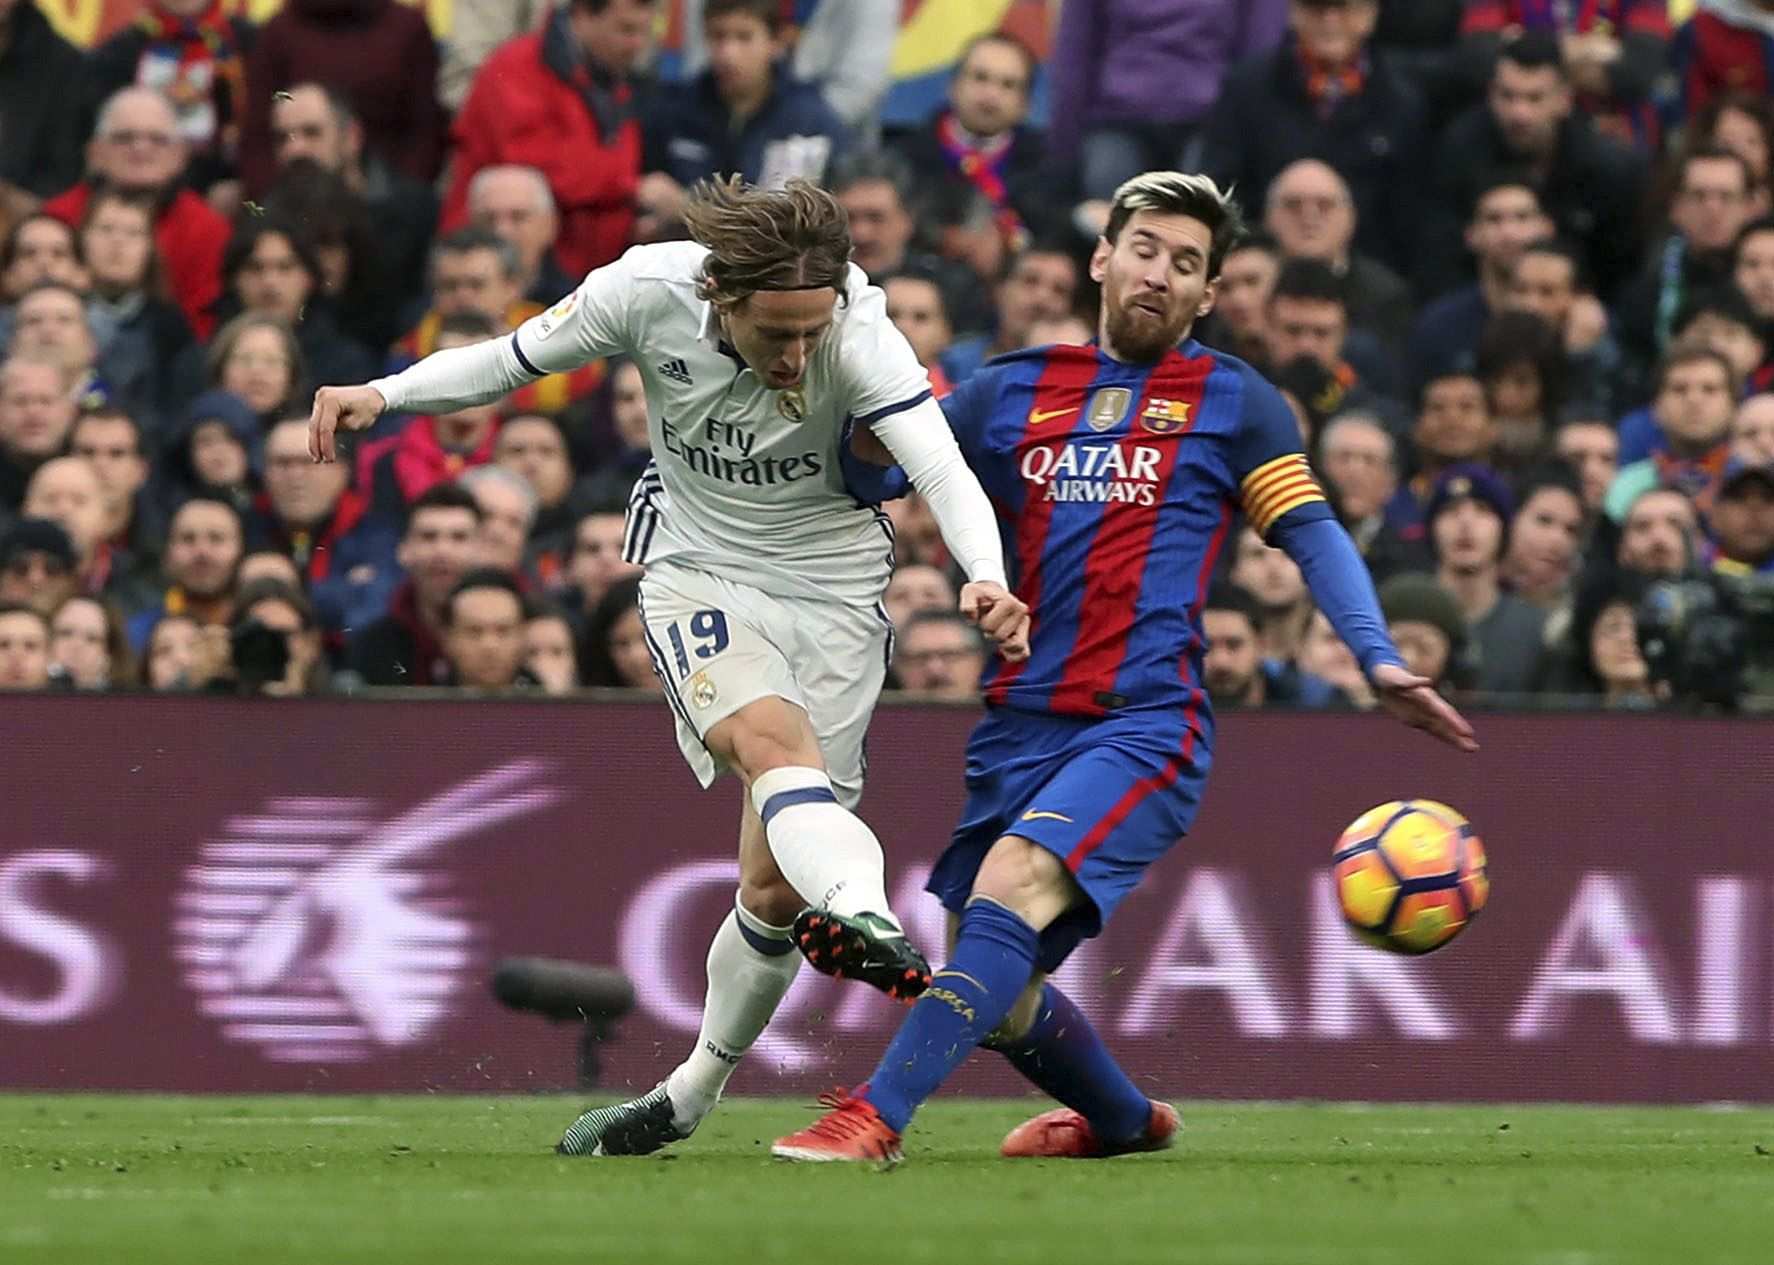 L'1x1 del Barça-Madrid